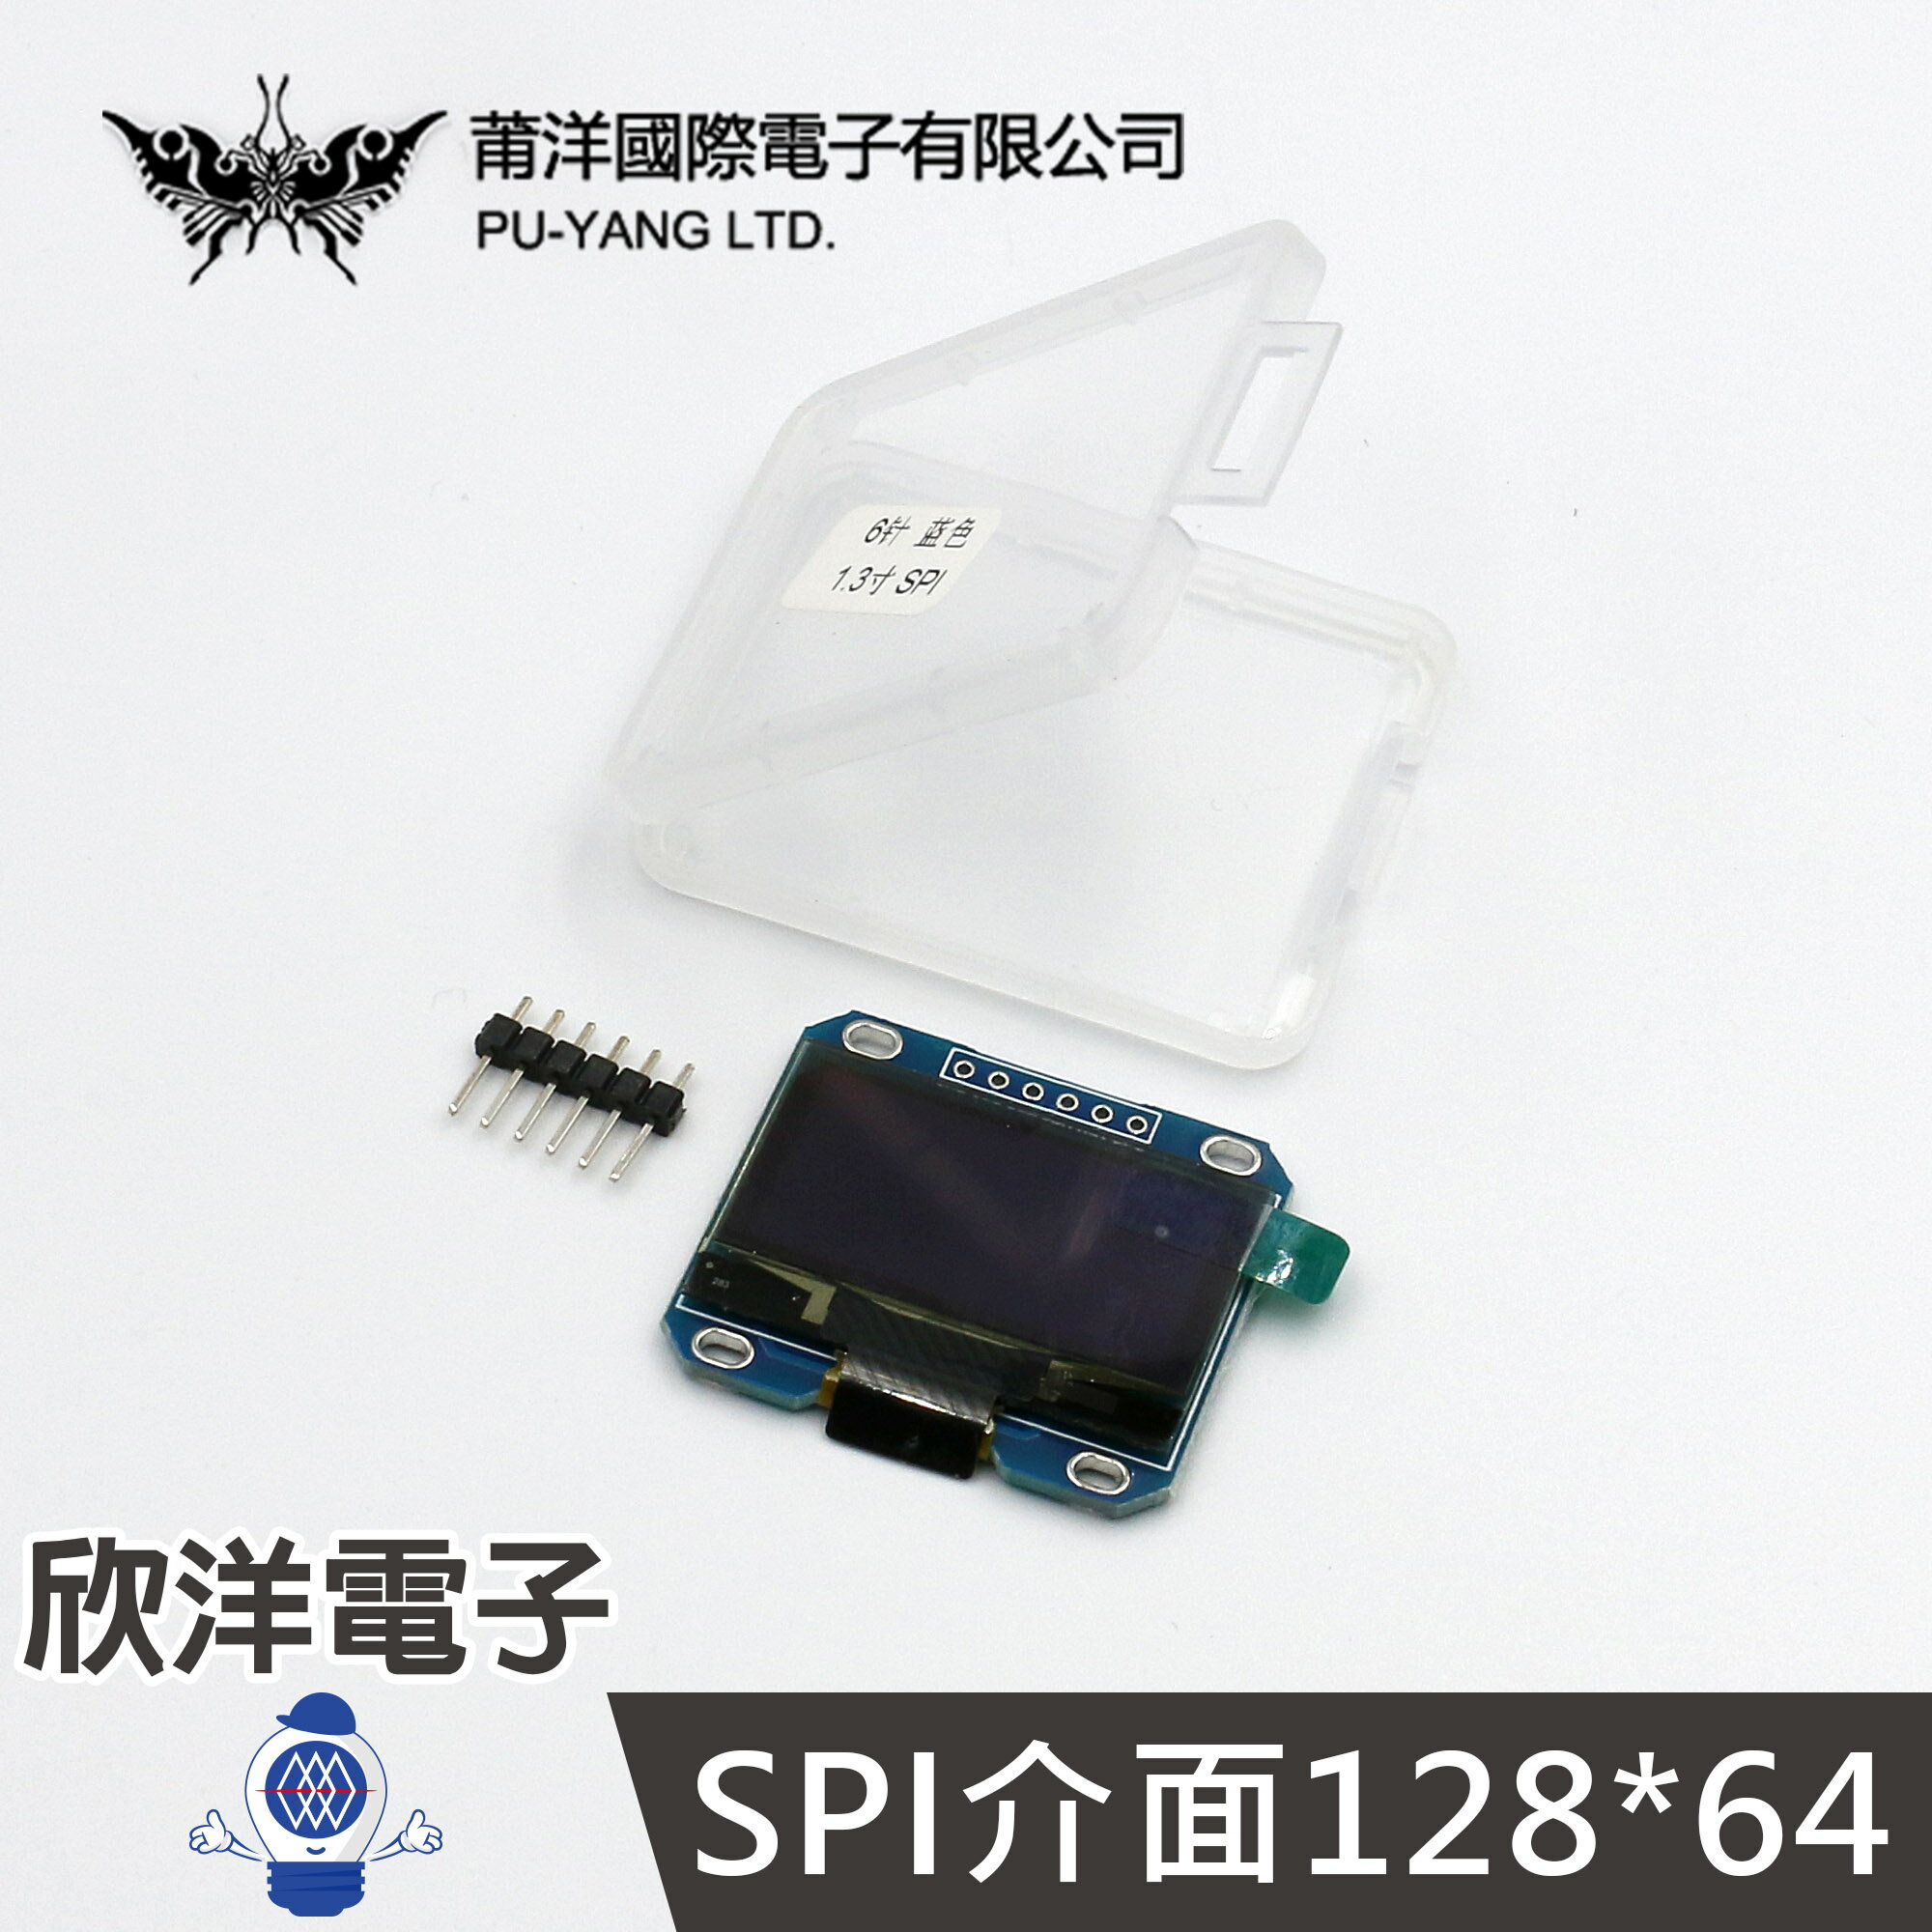 ※ 欣洋電子 ※ 莆洋 OLED SPI 液晶屏顯示模組 1.3吋 黑底藍字 (1489-BL) 模組 電子材料 Arduino 競賽 實驗 測試